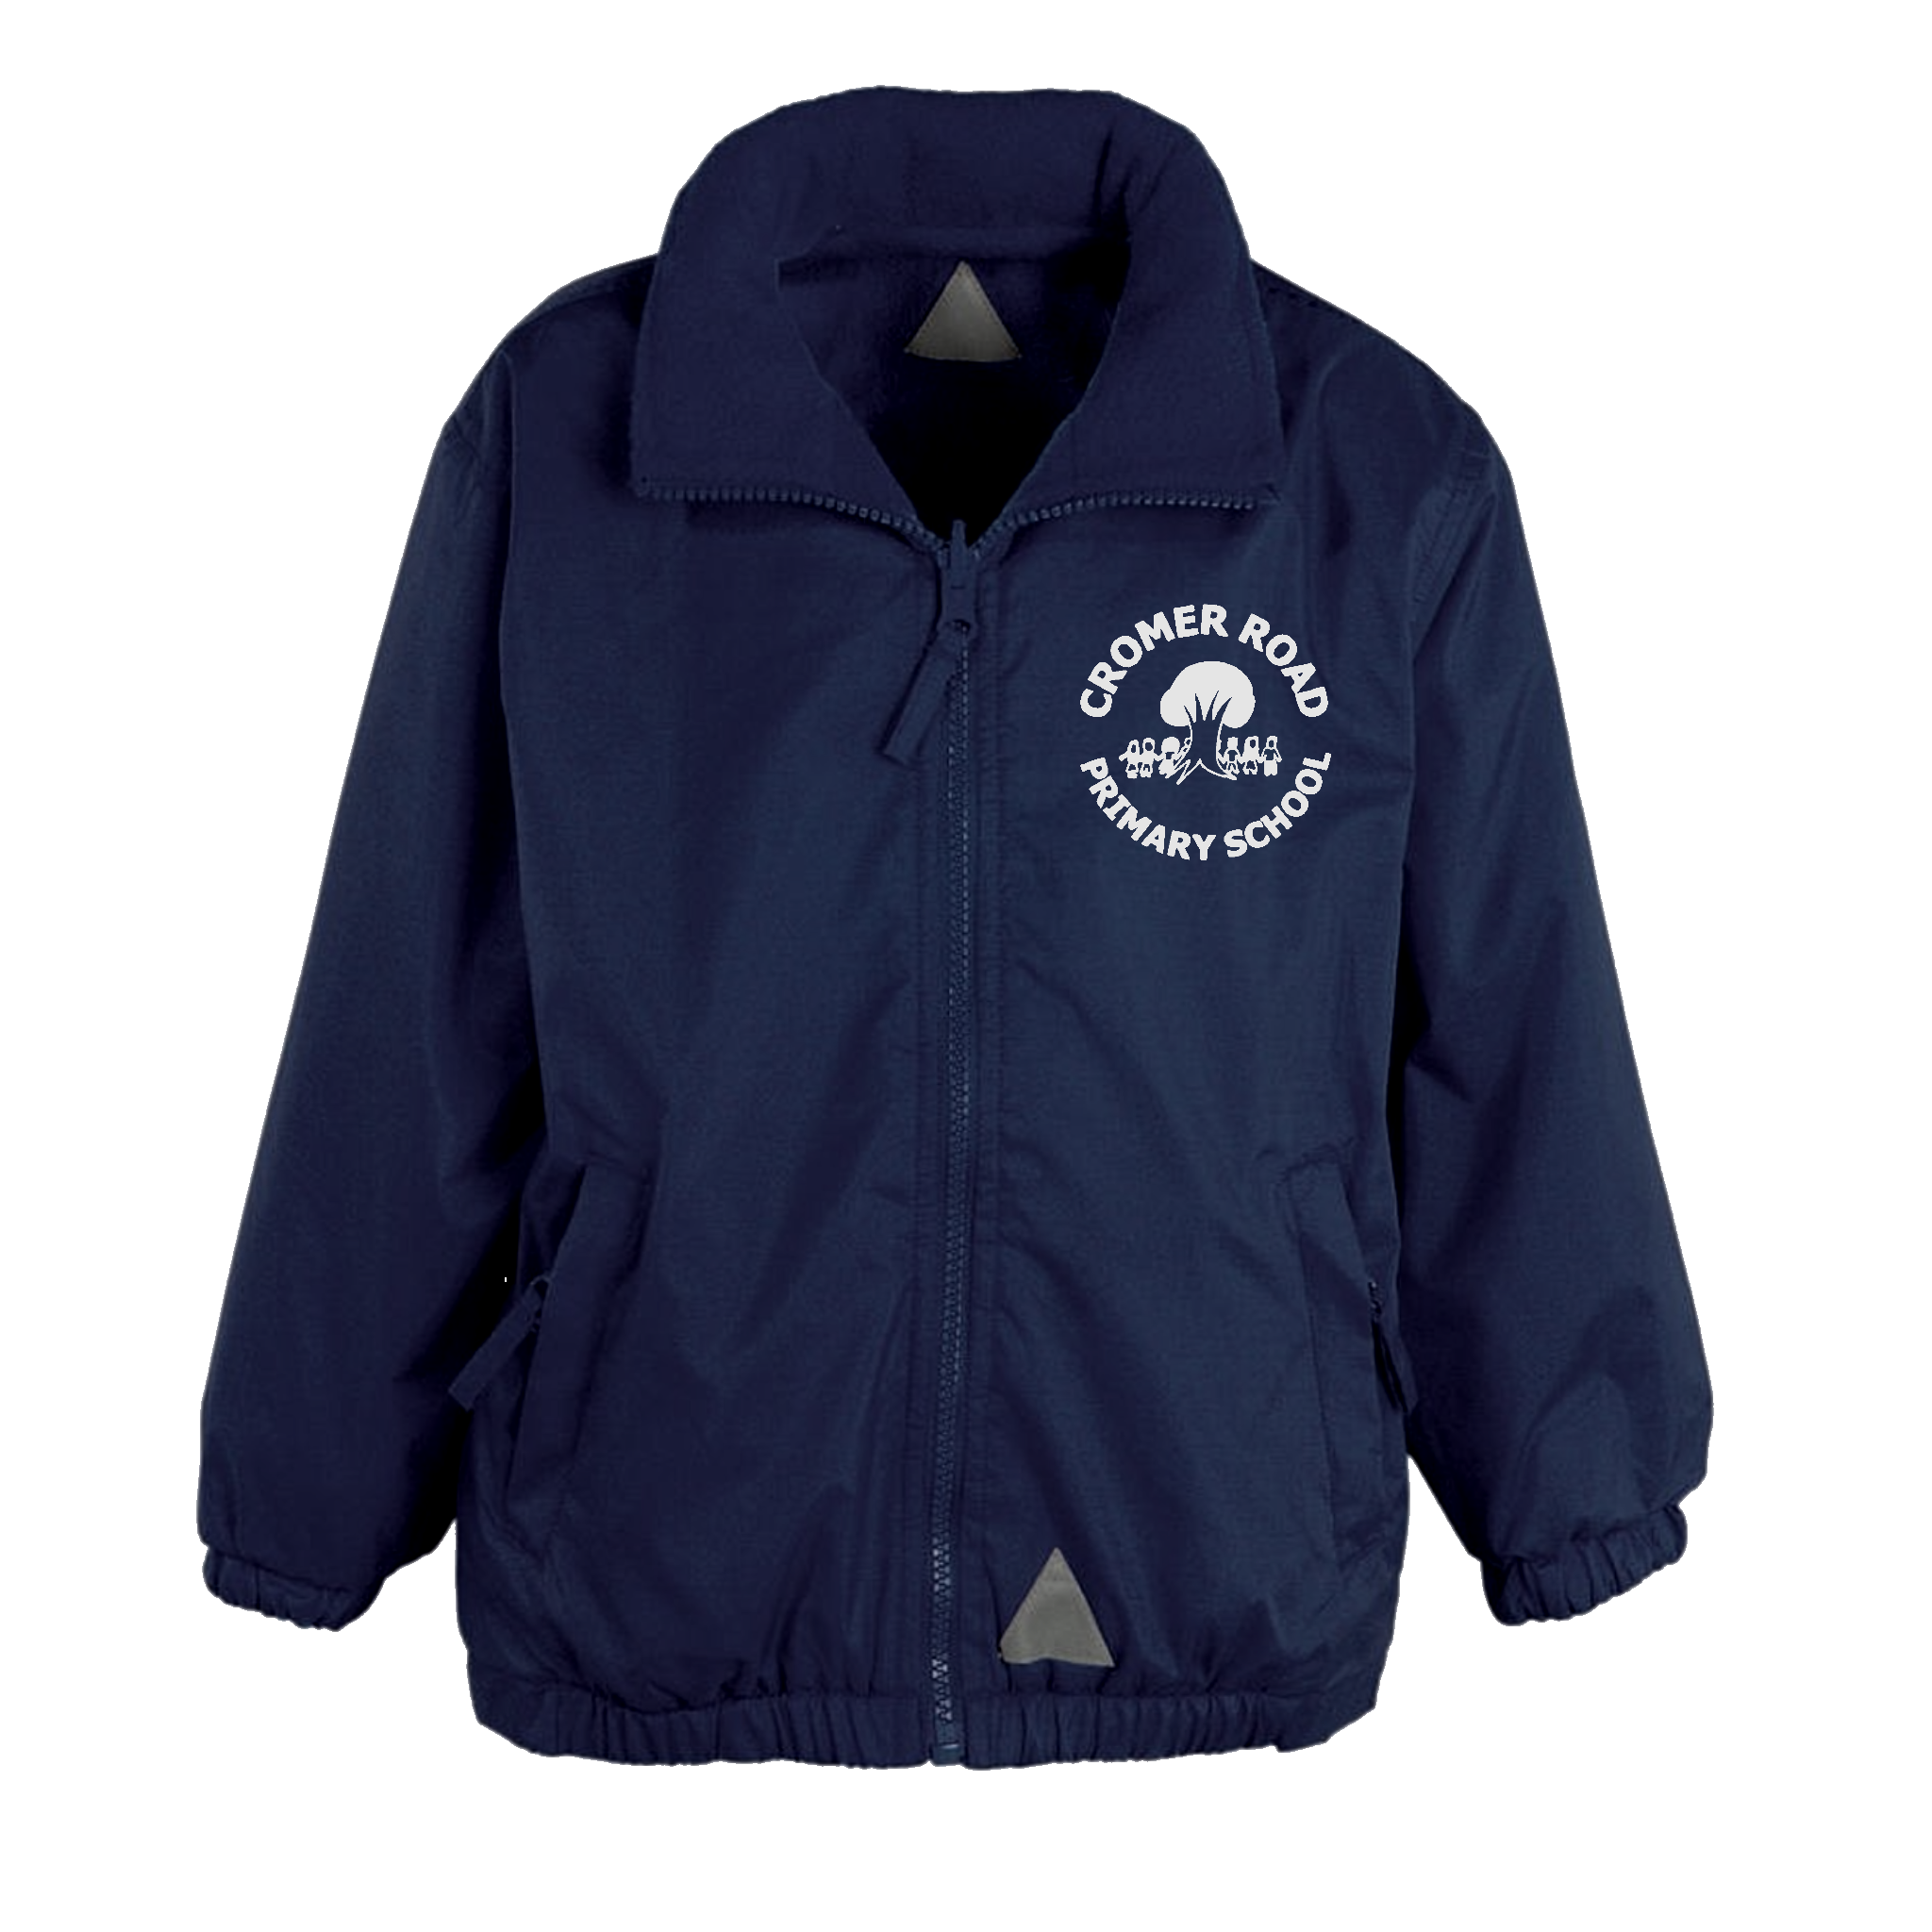 Cromer Road Jacket | Smiths Schoolwear